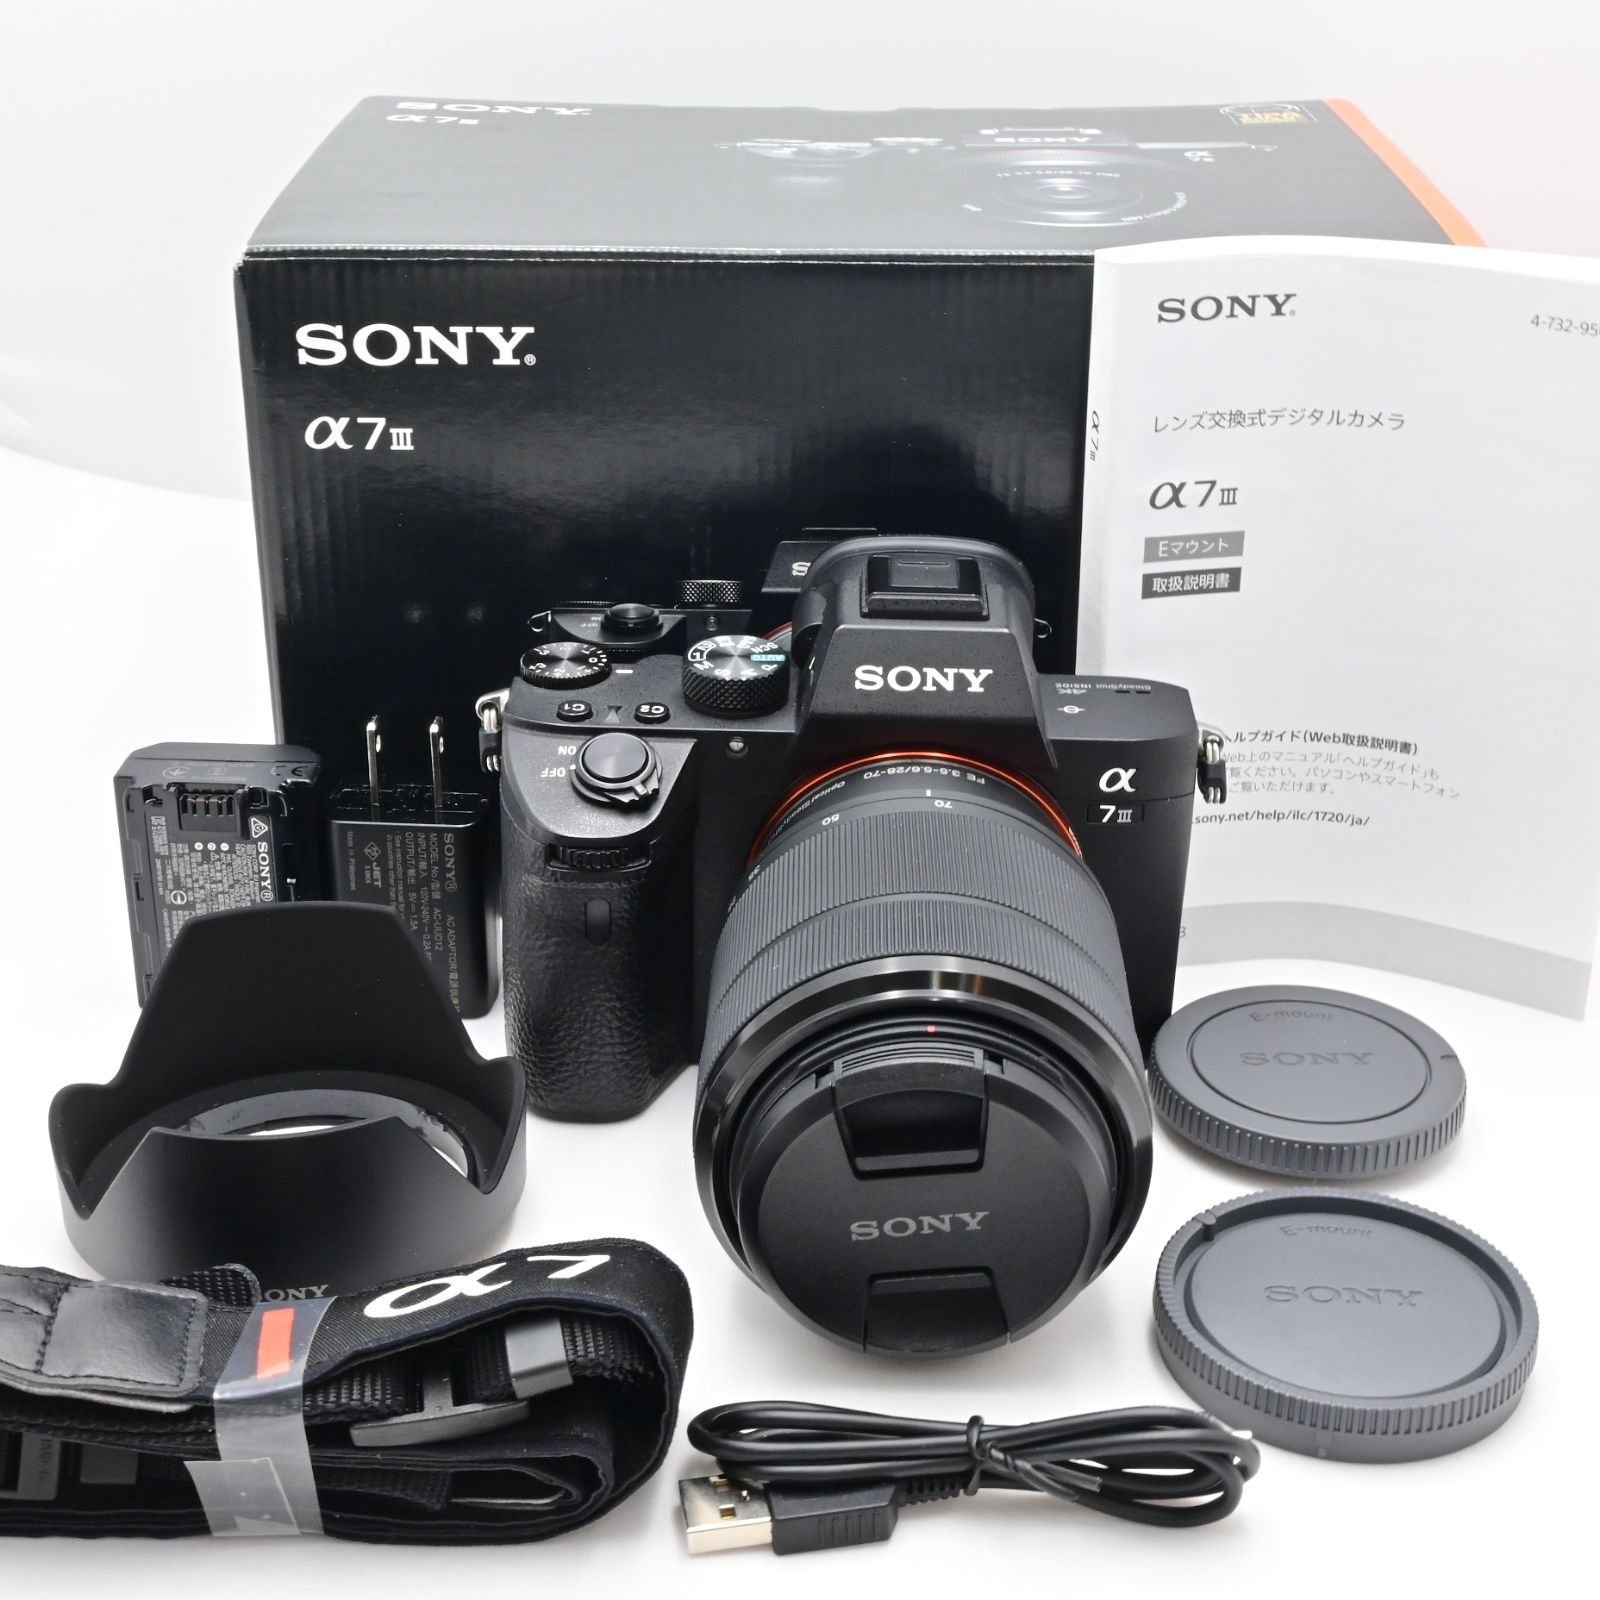 ソニー(SONY) フルサイズ ミラーレス一眼カメラ α7III ズームレンズキット(同梱レンズ:SEL2870) ブラック ILCE-7M3K -  メルカリ